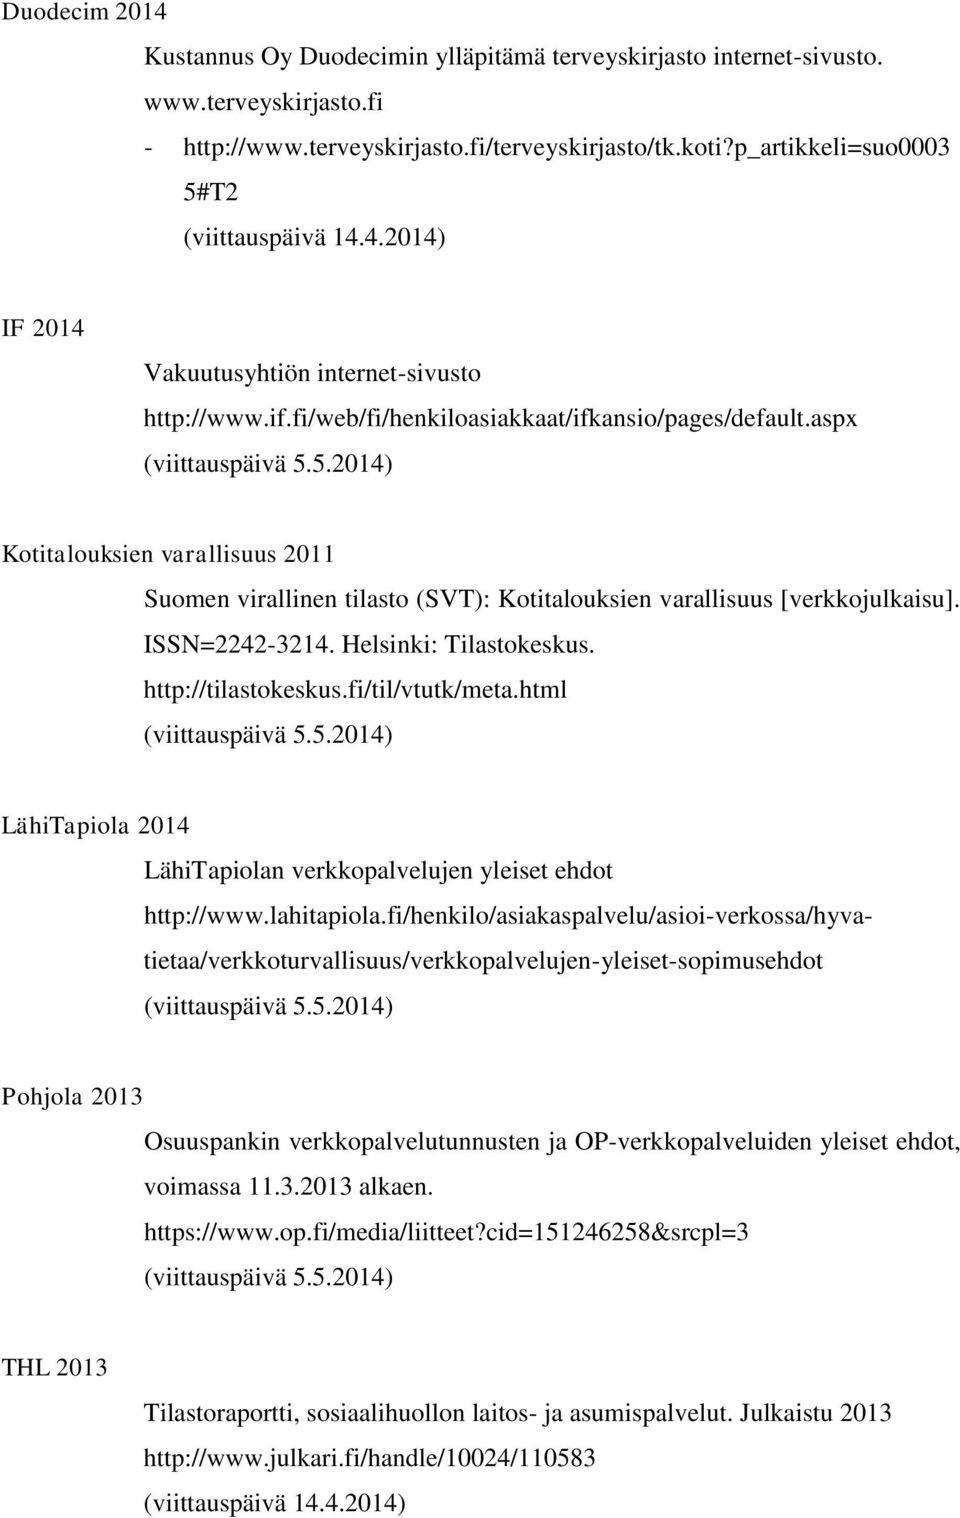 ISSN=2242-3214. Helsinki: Tilastokeskus. http://tilastokeskus.fi/til/vtutk/meta.html (viittauspäivä 5.5.2014) LähiTapiola 2014 LähiTapiolan verkkopalvelujen yleiset ehdot http://www.lahitapiola.